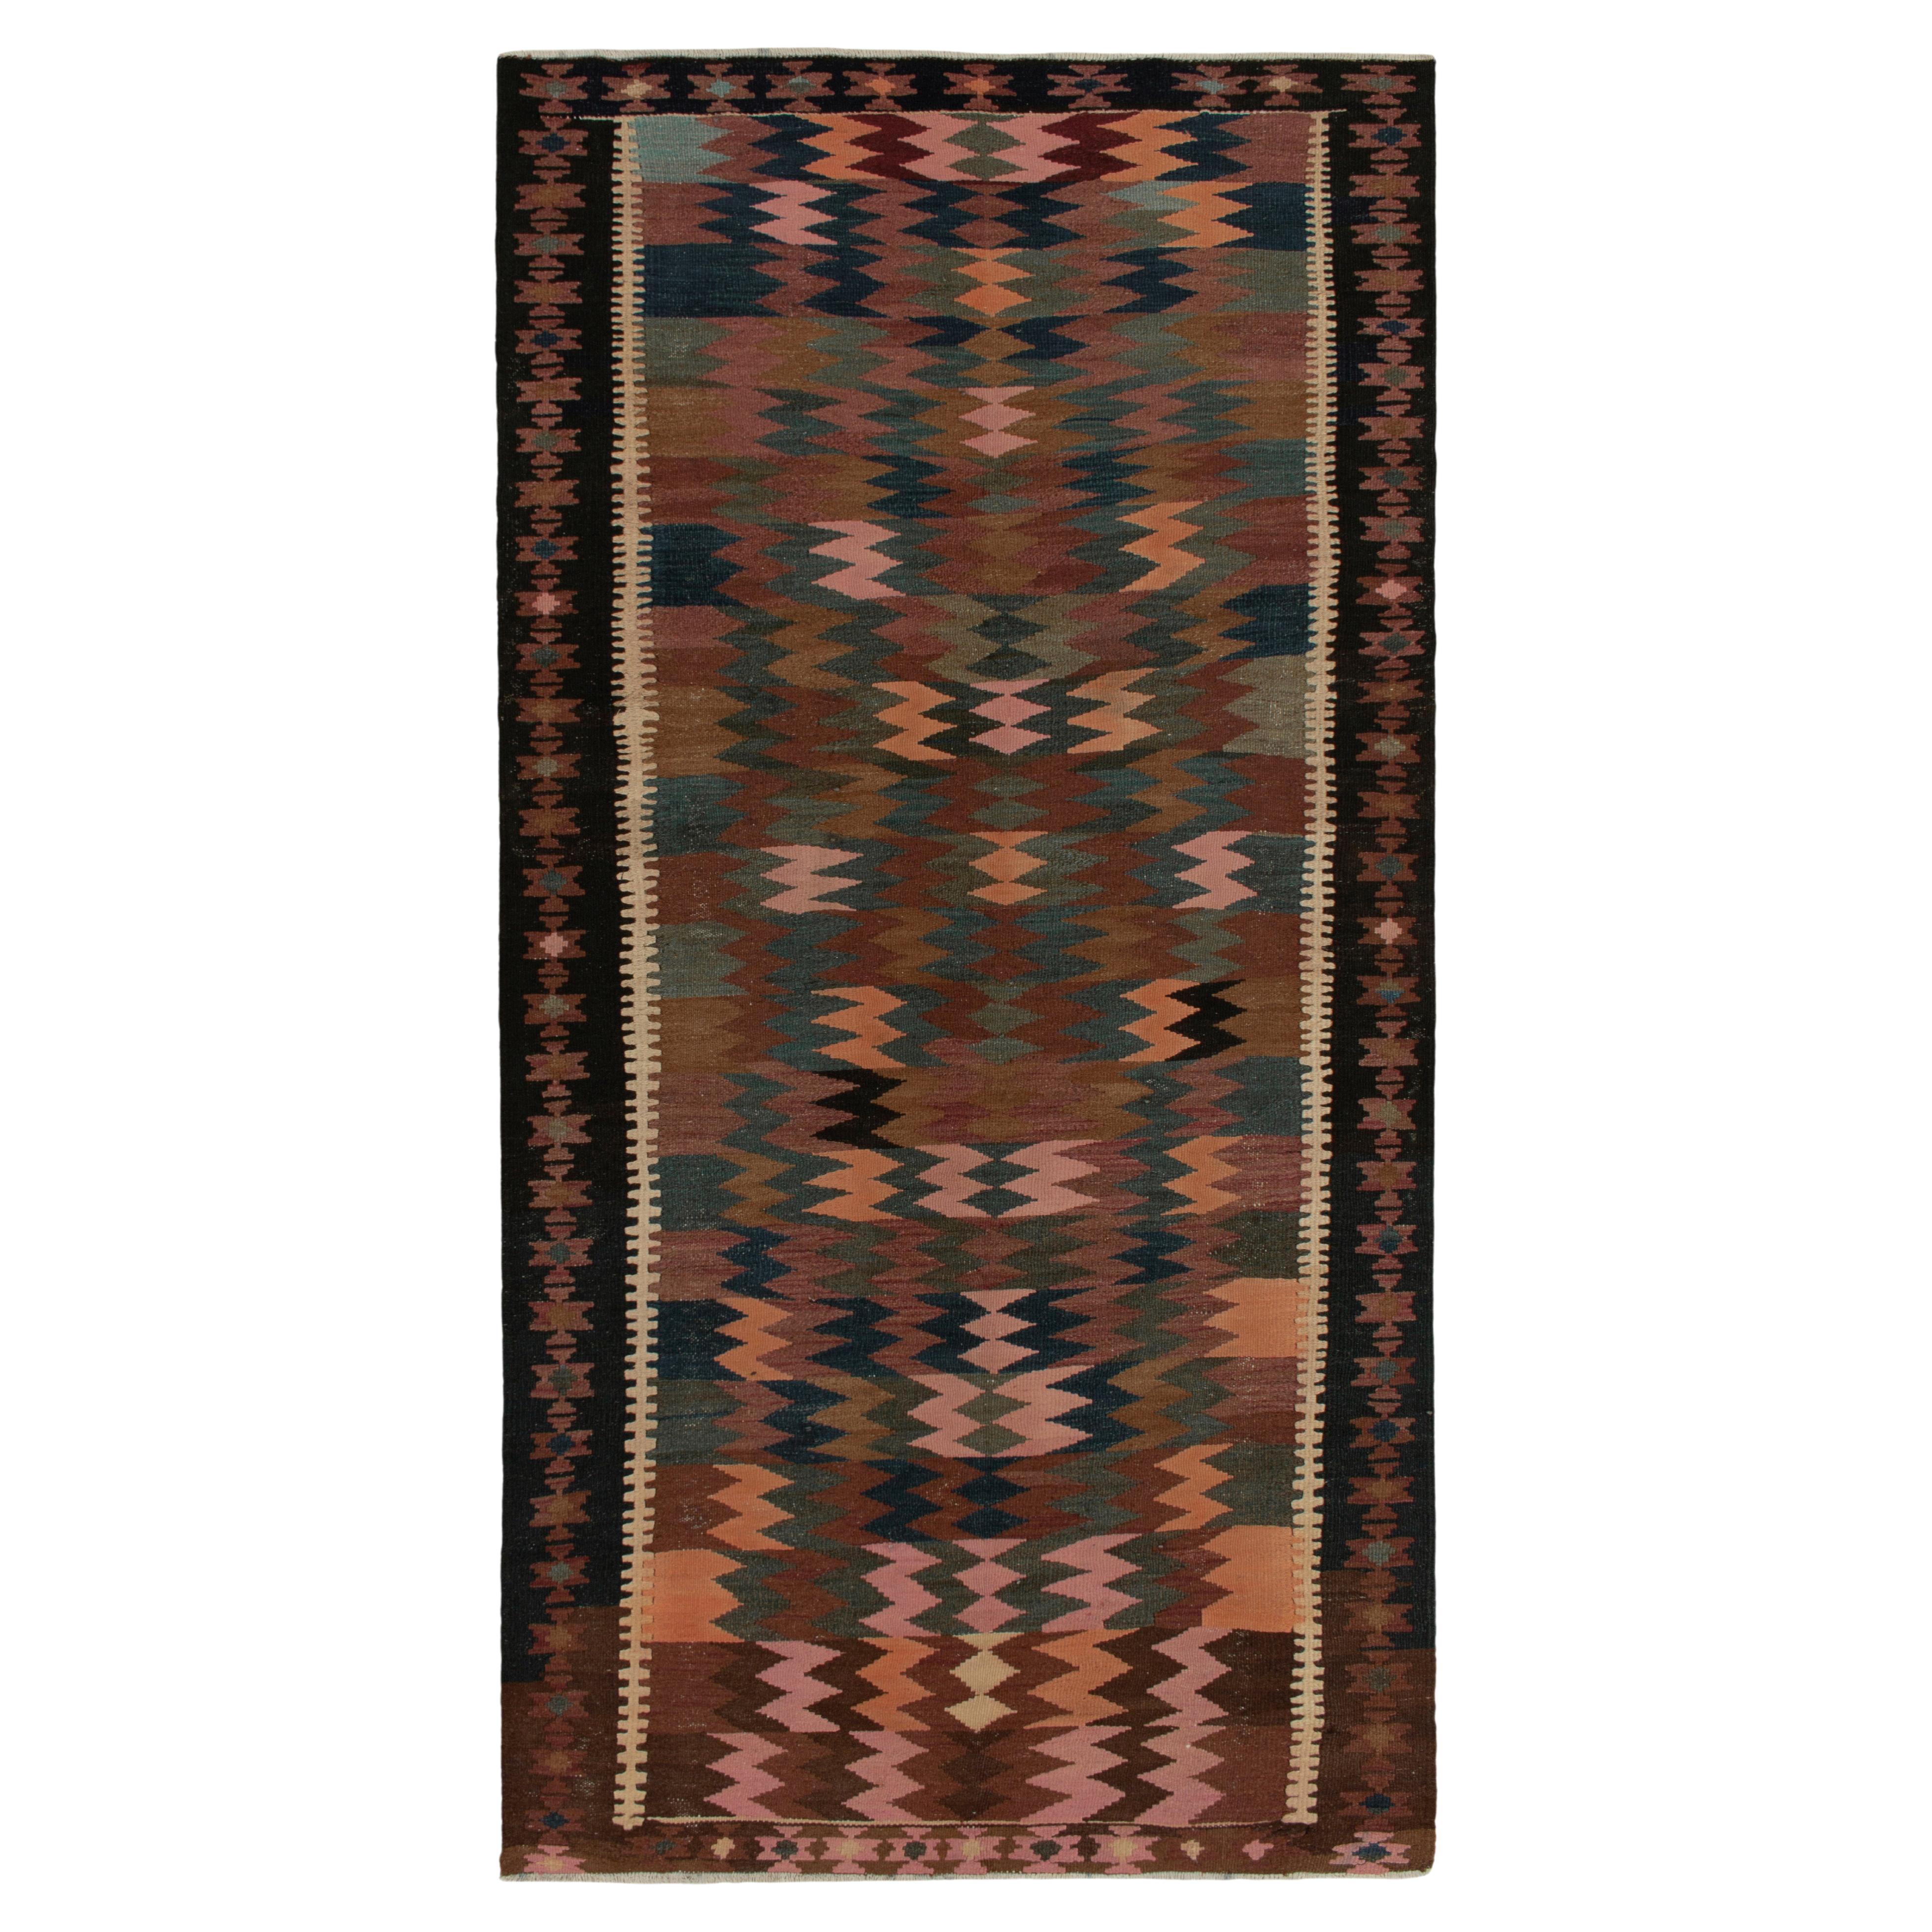 Tapis persan Kilim vintage à motif géométrique tribal beige-marron par Rug & Kilim